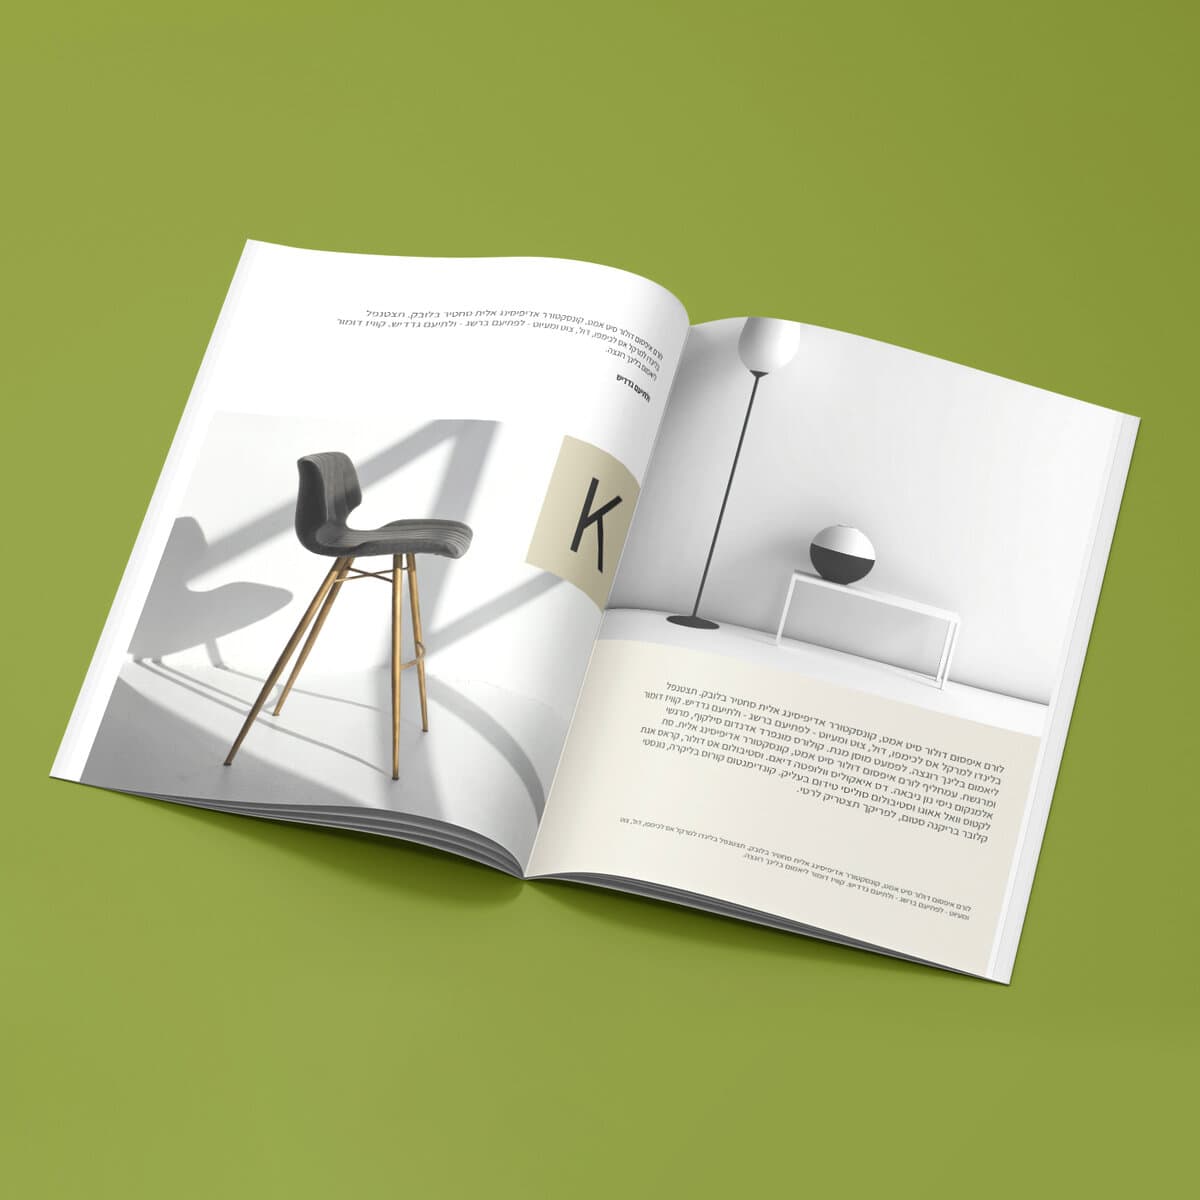 קטלוג / חוברת של חברת רהיטים בכריכת הדבקה המציג כסא ומנורה מודרניים על רקע ירוק.